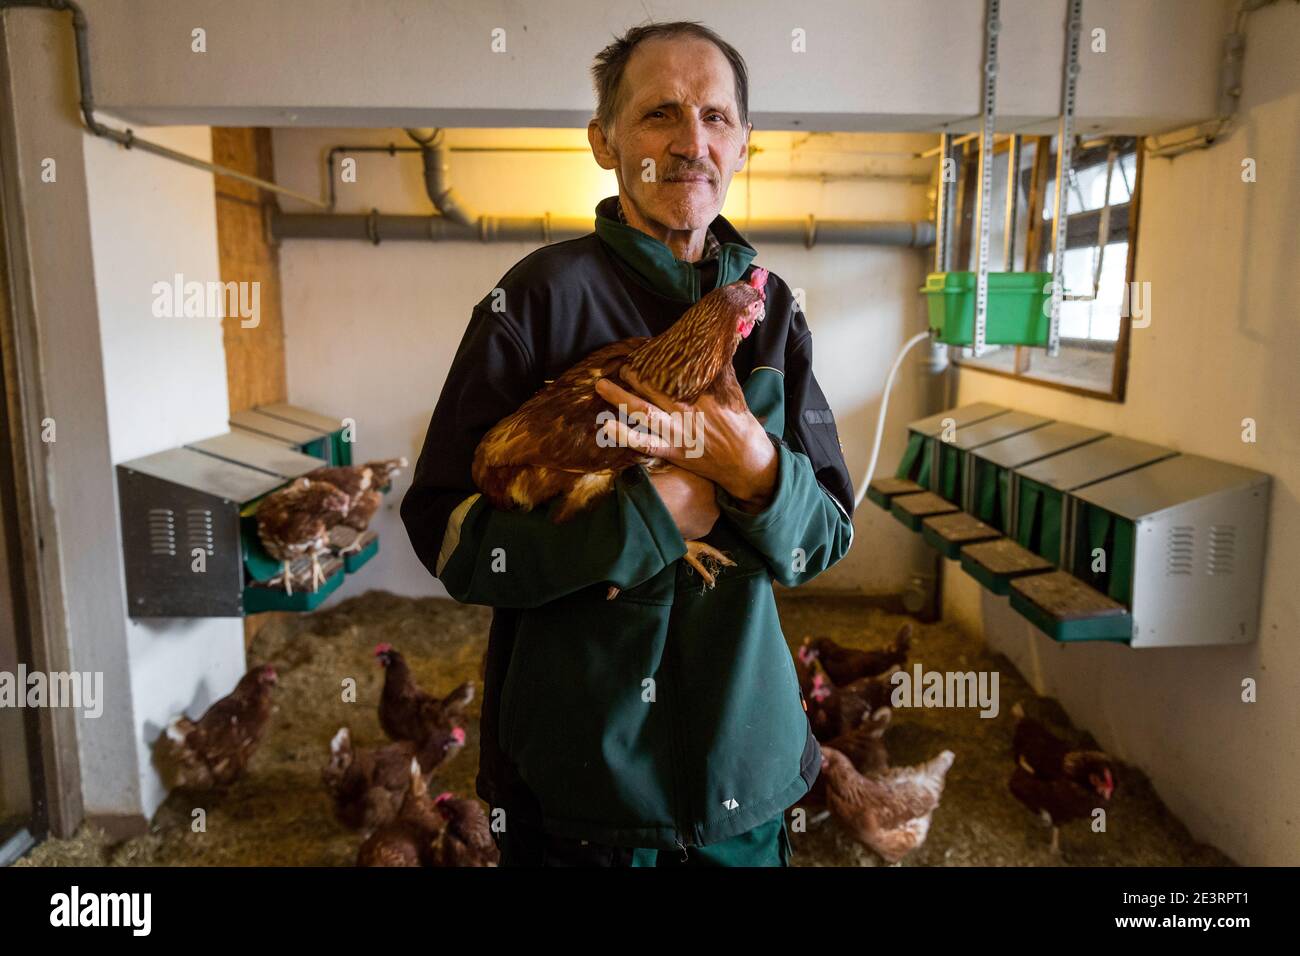 Karl Heinz Degen 70, qui che lavora nella gabbia di pollo, vive nella casa senior della fattoria di Eiffel a Marienrachdorf, in Rheinland-Pfalz Germania, dove gli anziani possono anche entrare in contatto con gli animali o addirittura lavorare nella fattoria stessa. Foto Stock